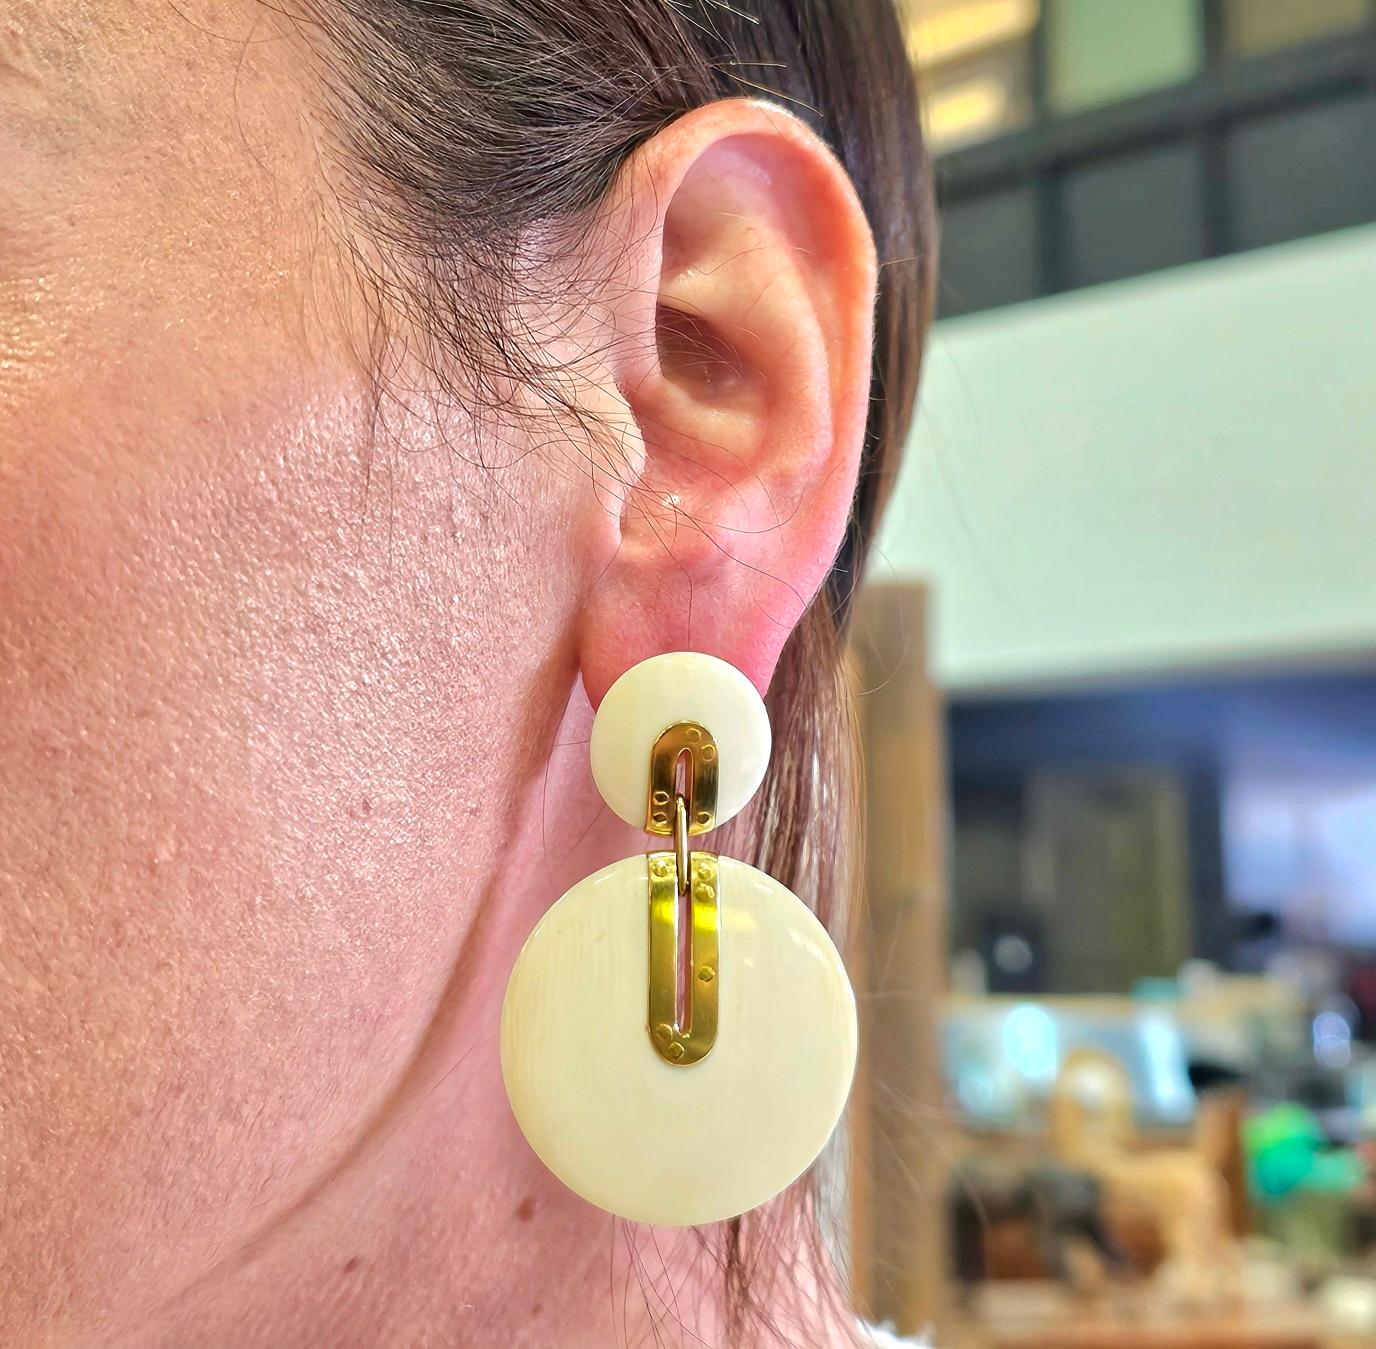 Boucles d'oreilles géométriques modernistes allemandes.

Cette paire de boucles d'oreilles pendantes peut être considérée comme l'exemple même du bijou moderniste, en raison de son design élégant et de sa simplicité. Ils ont été fabriqués en